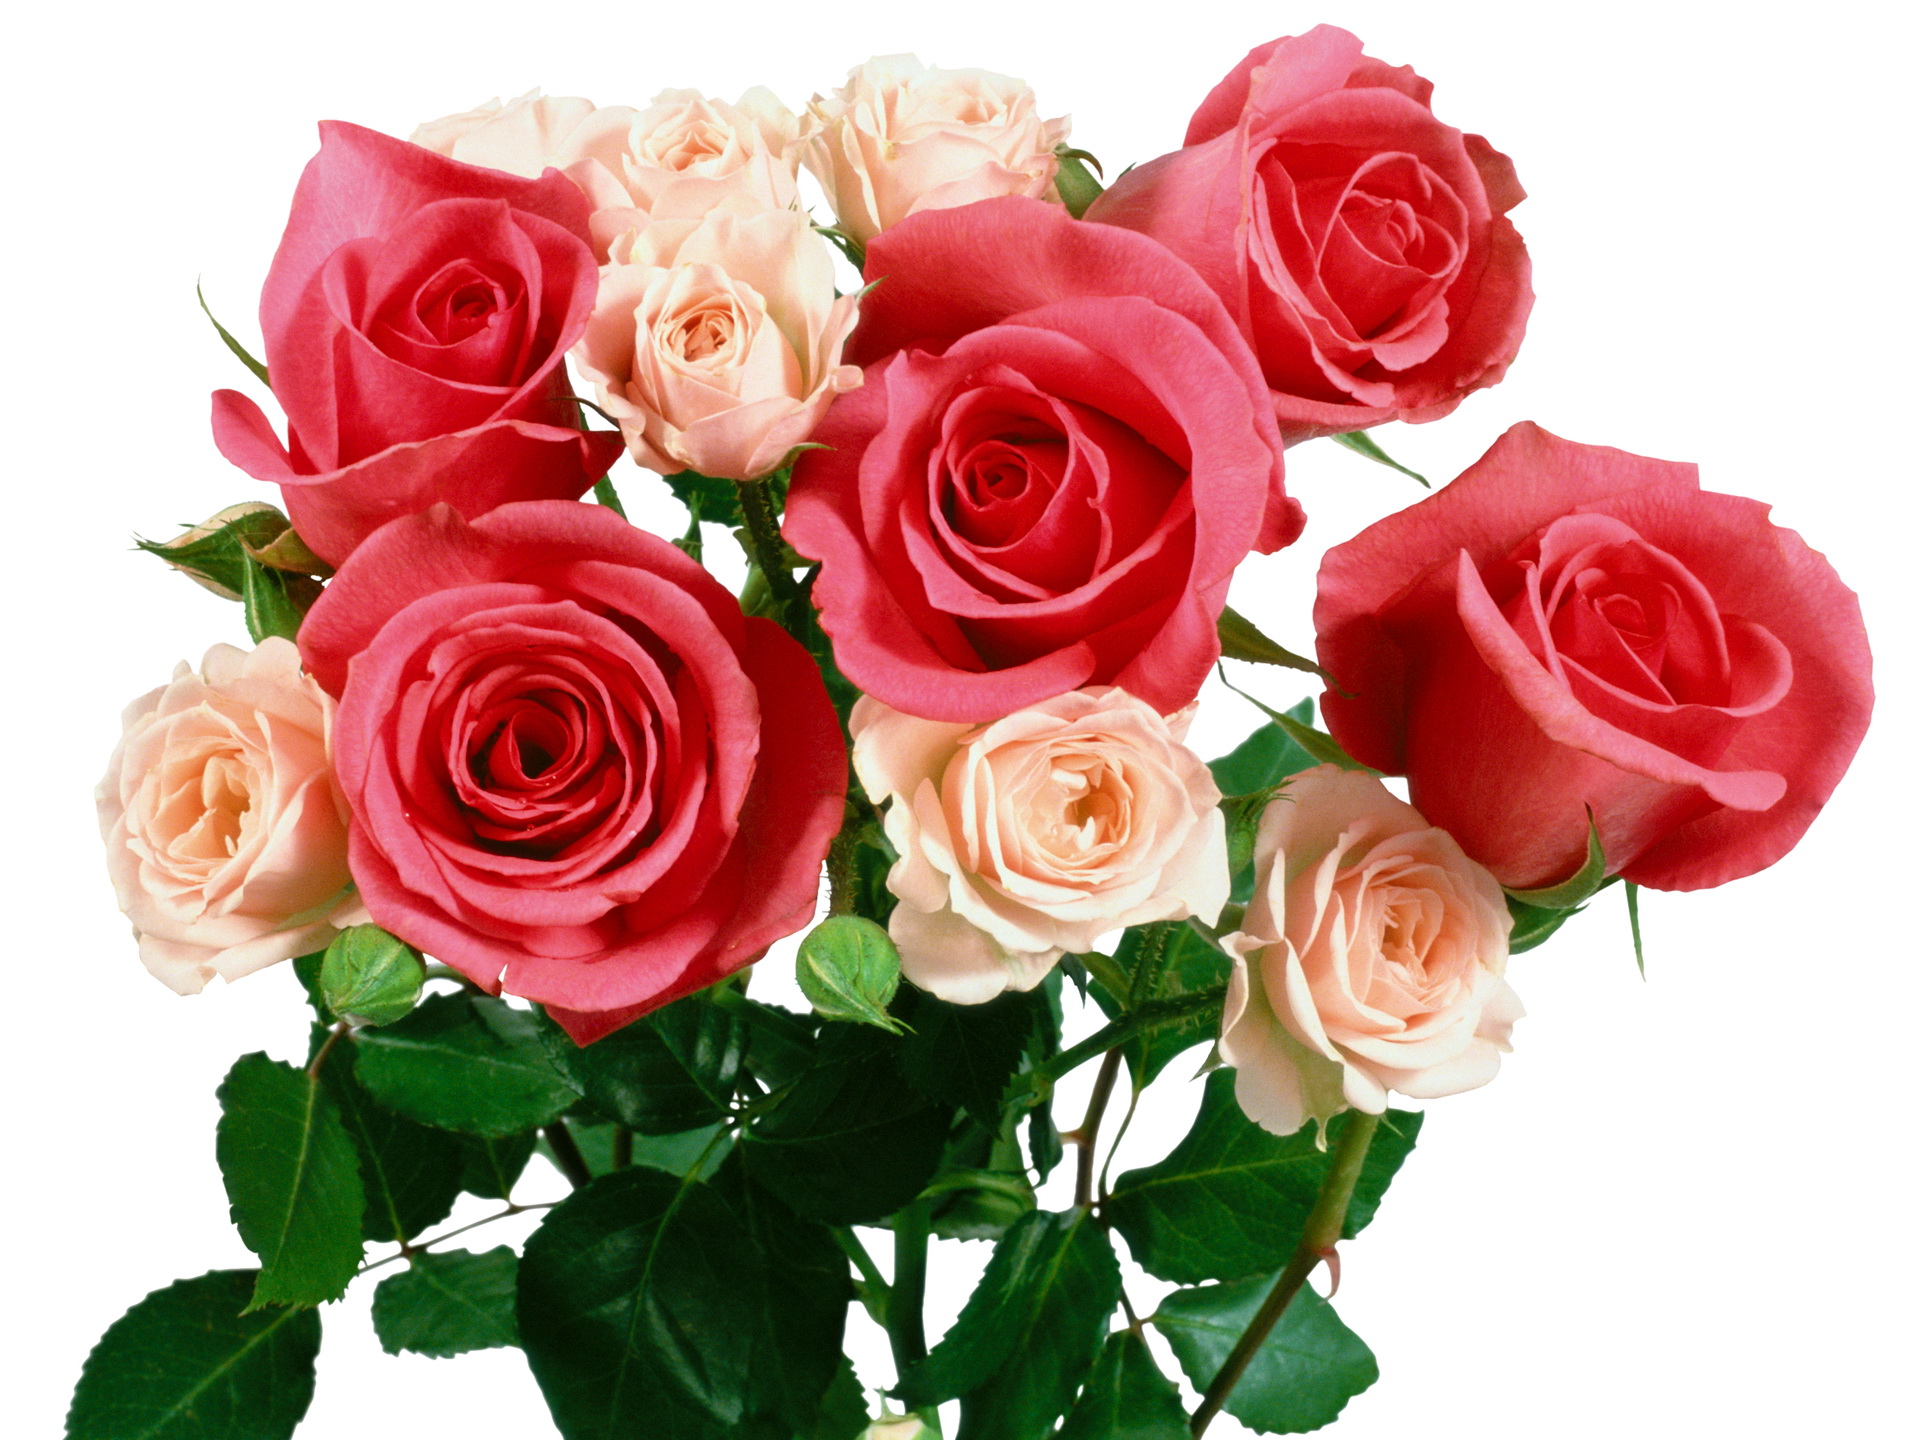 Поздравительные розы. Букет роз. Красивые розы. Красивый букет роз. Шикарный букет цветов на прозрачном фоне.